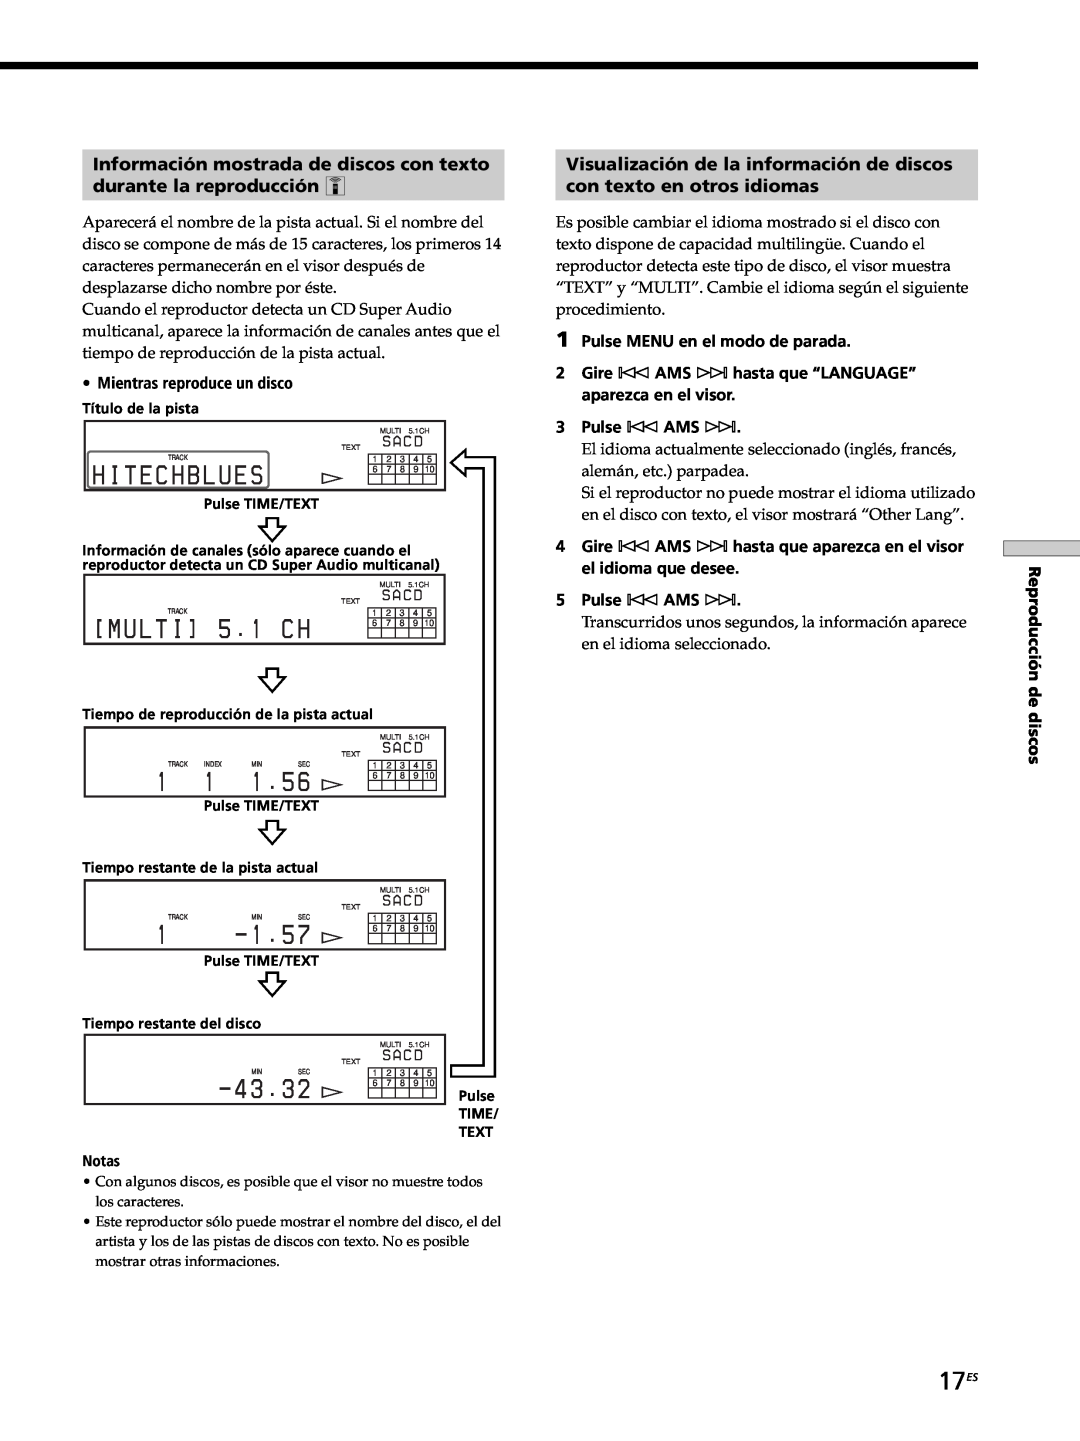 Sony SCD-XB770 17ES, Información mostrada de discos con texto, durante la reproducción Z, con texto en otros idiomas 